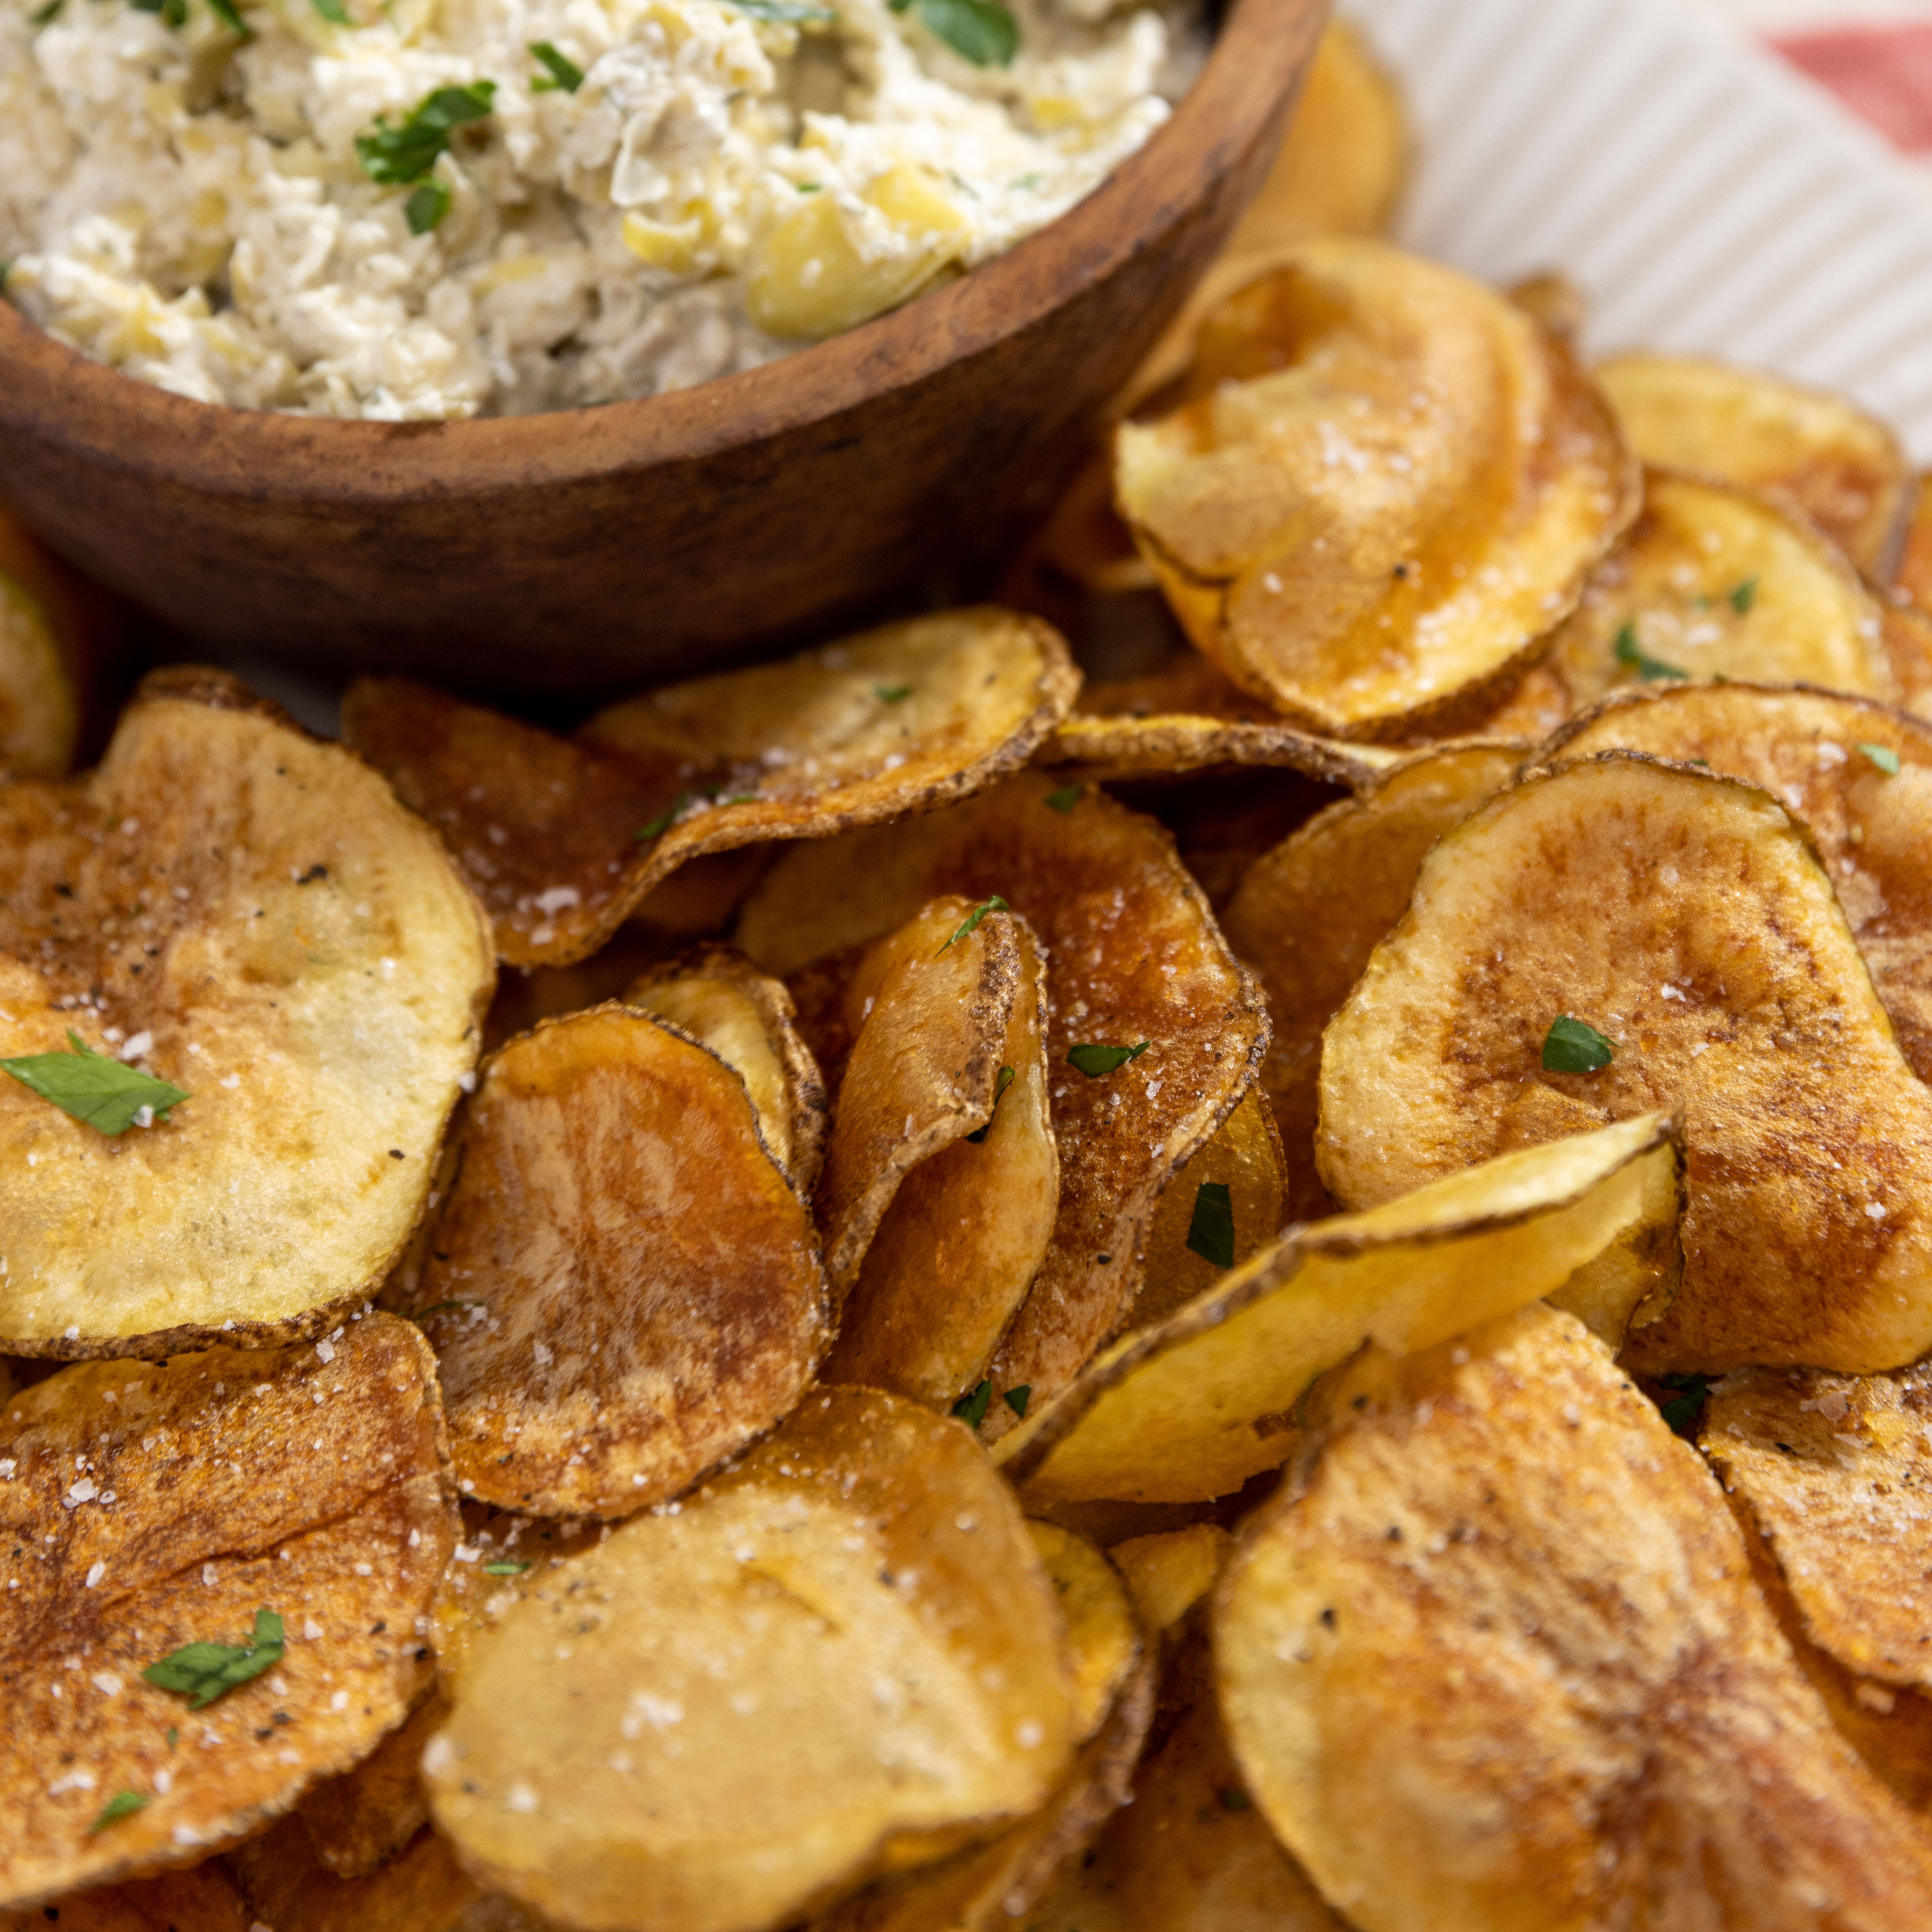 Joanna Gaines' Homemade Potato Chips